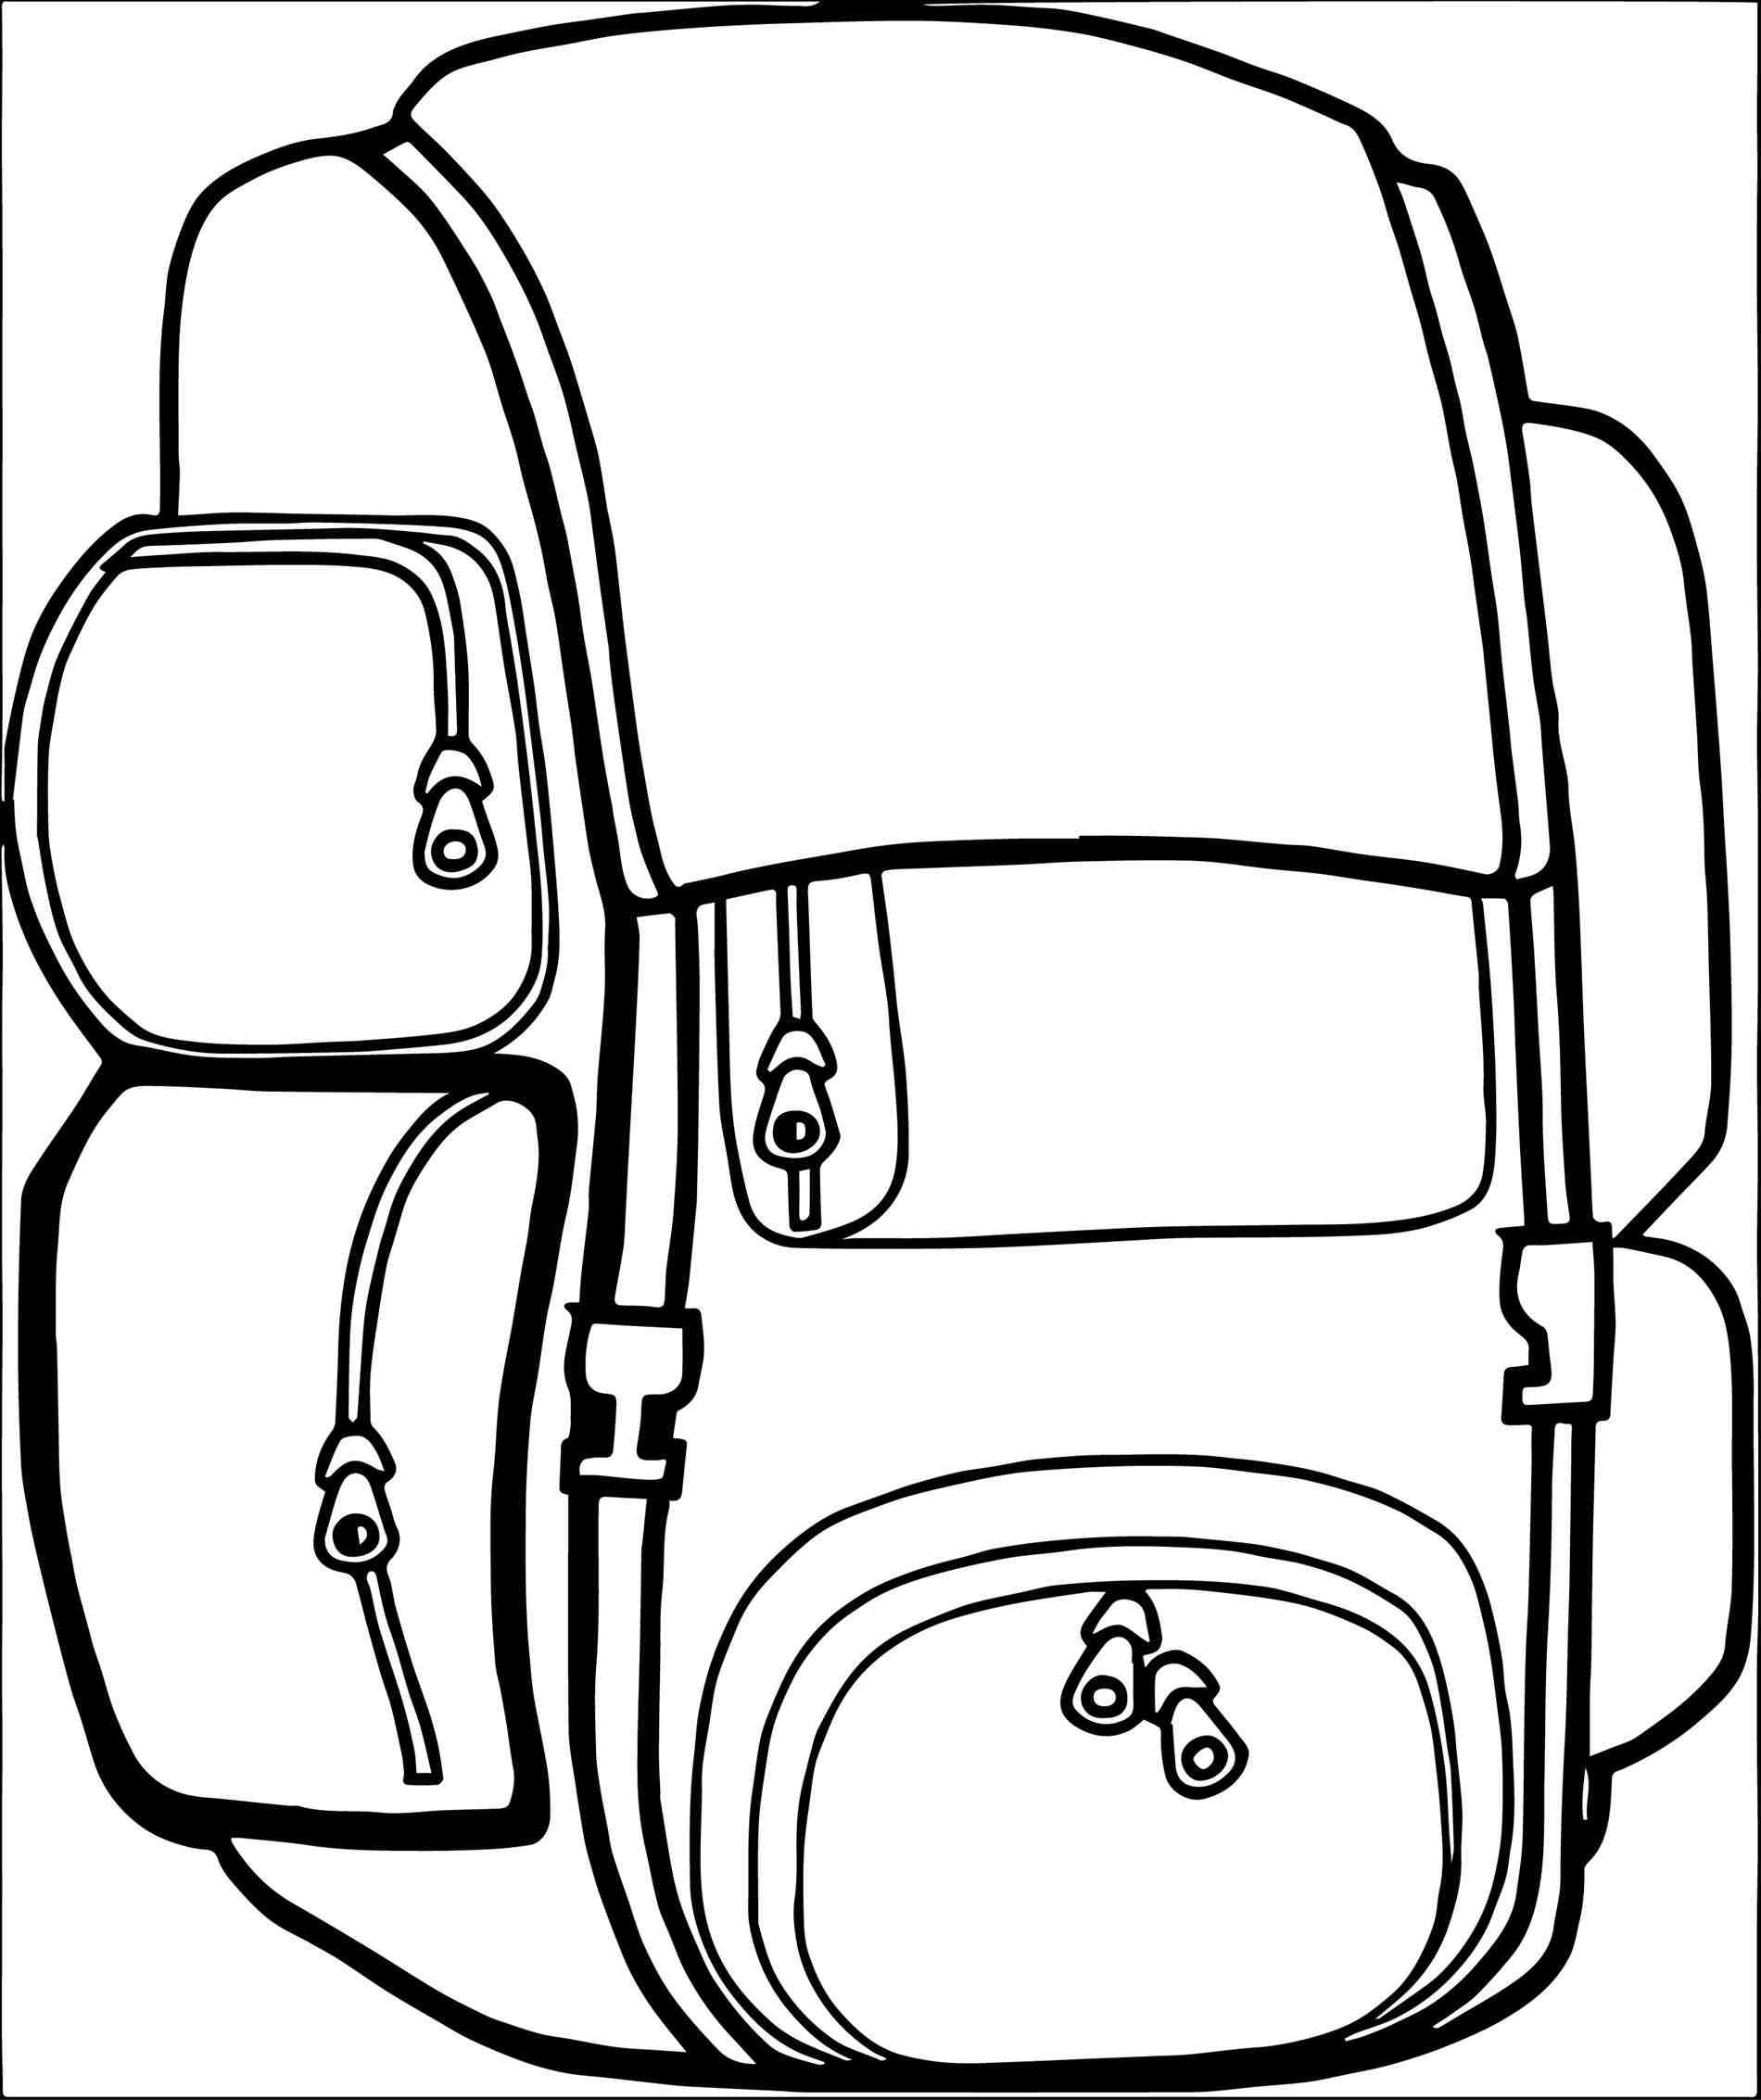 Backpack clipart sleeping bag. Digital from rhetsystudiocom camping